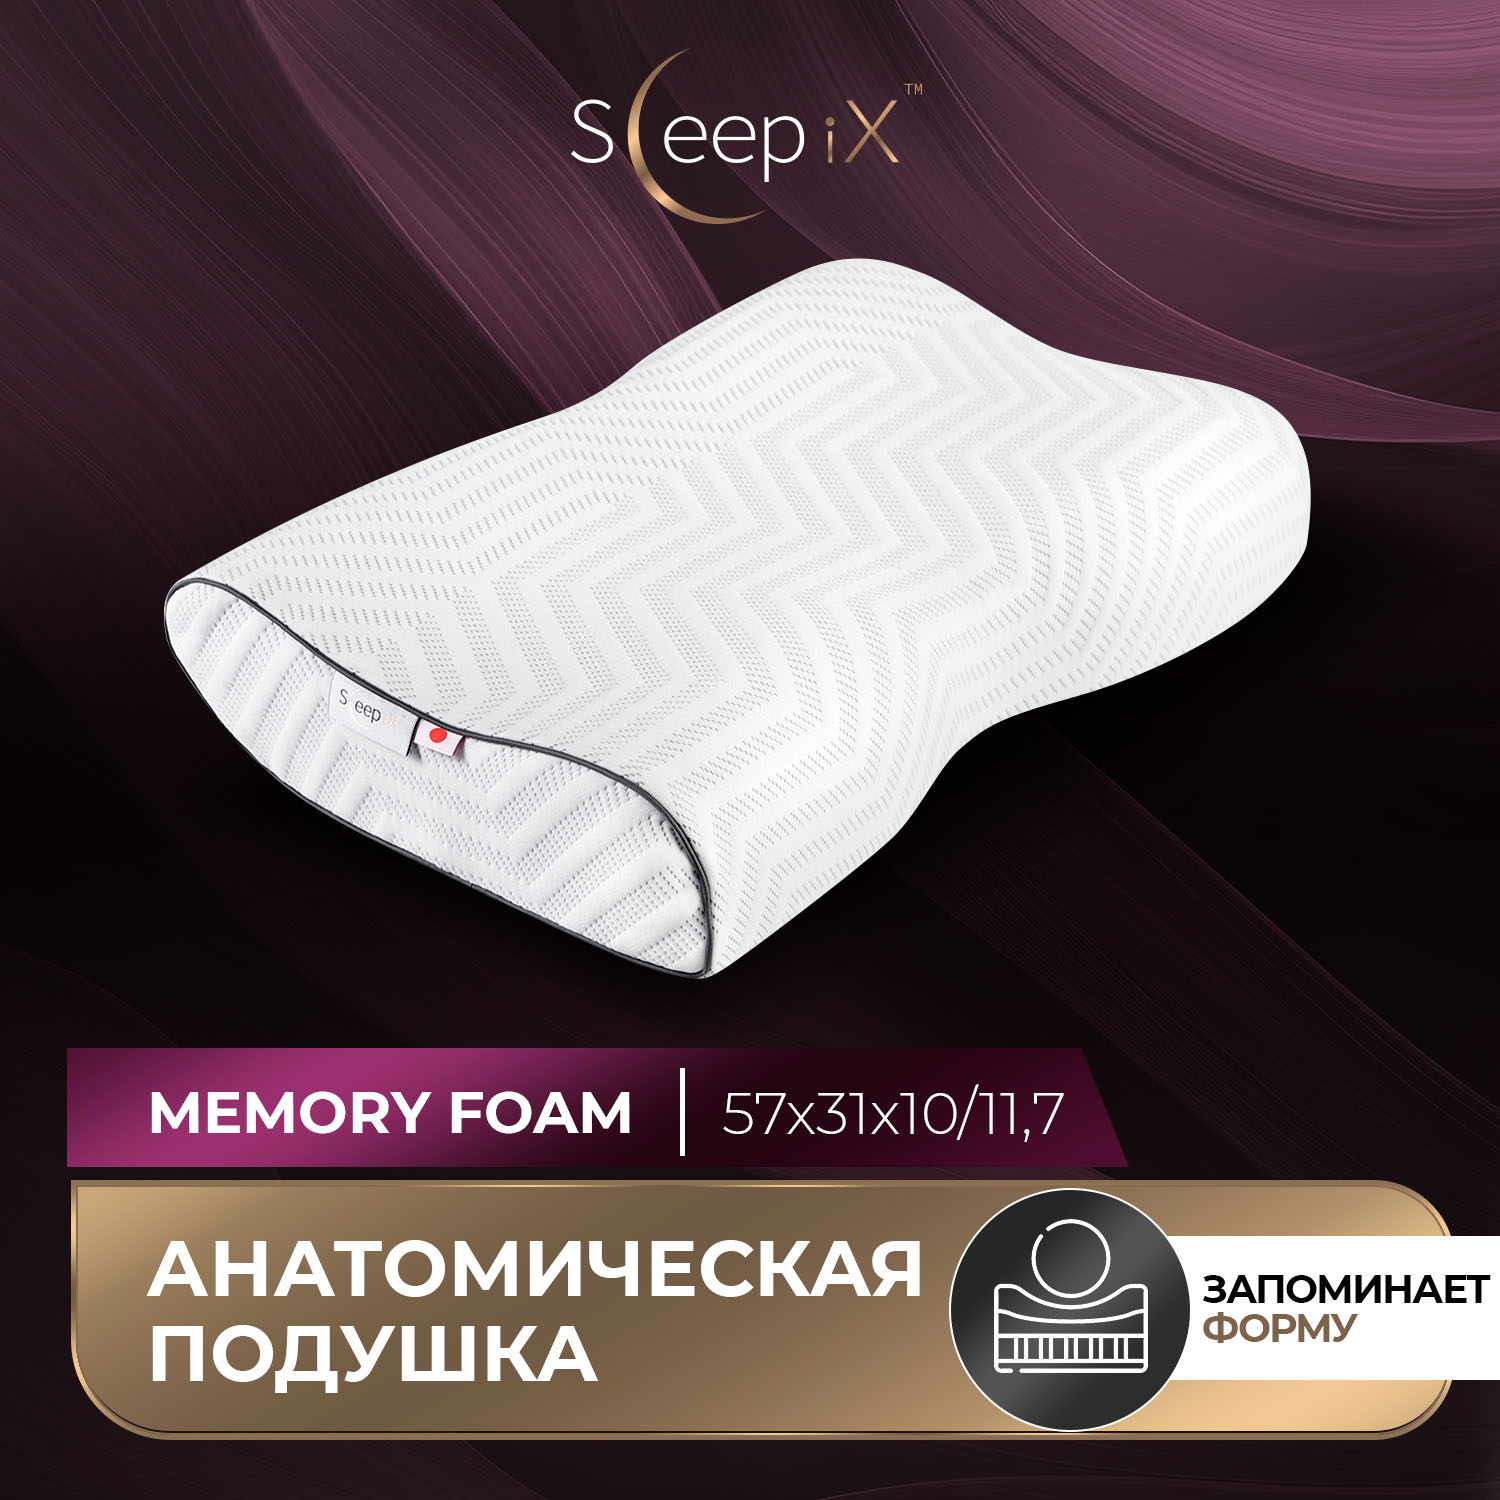 Подушки Sleep iX